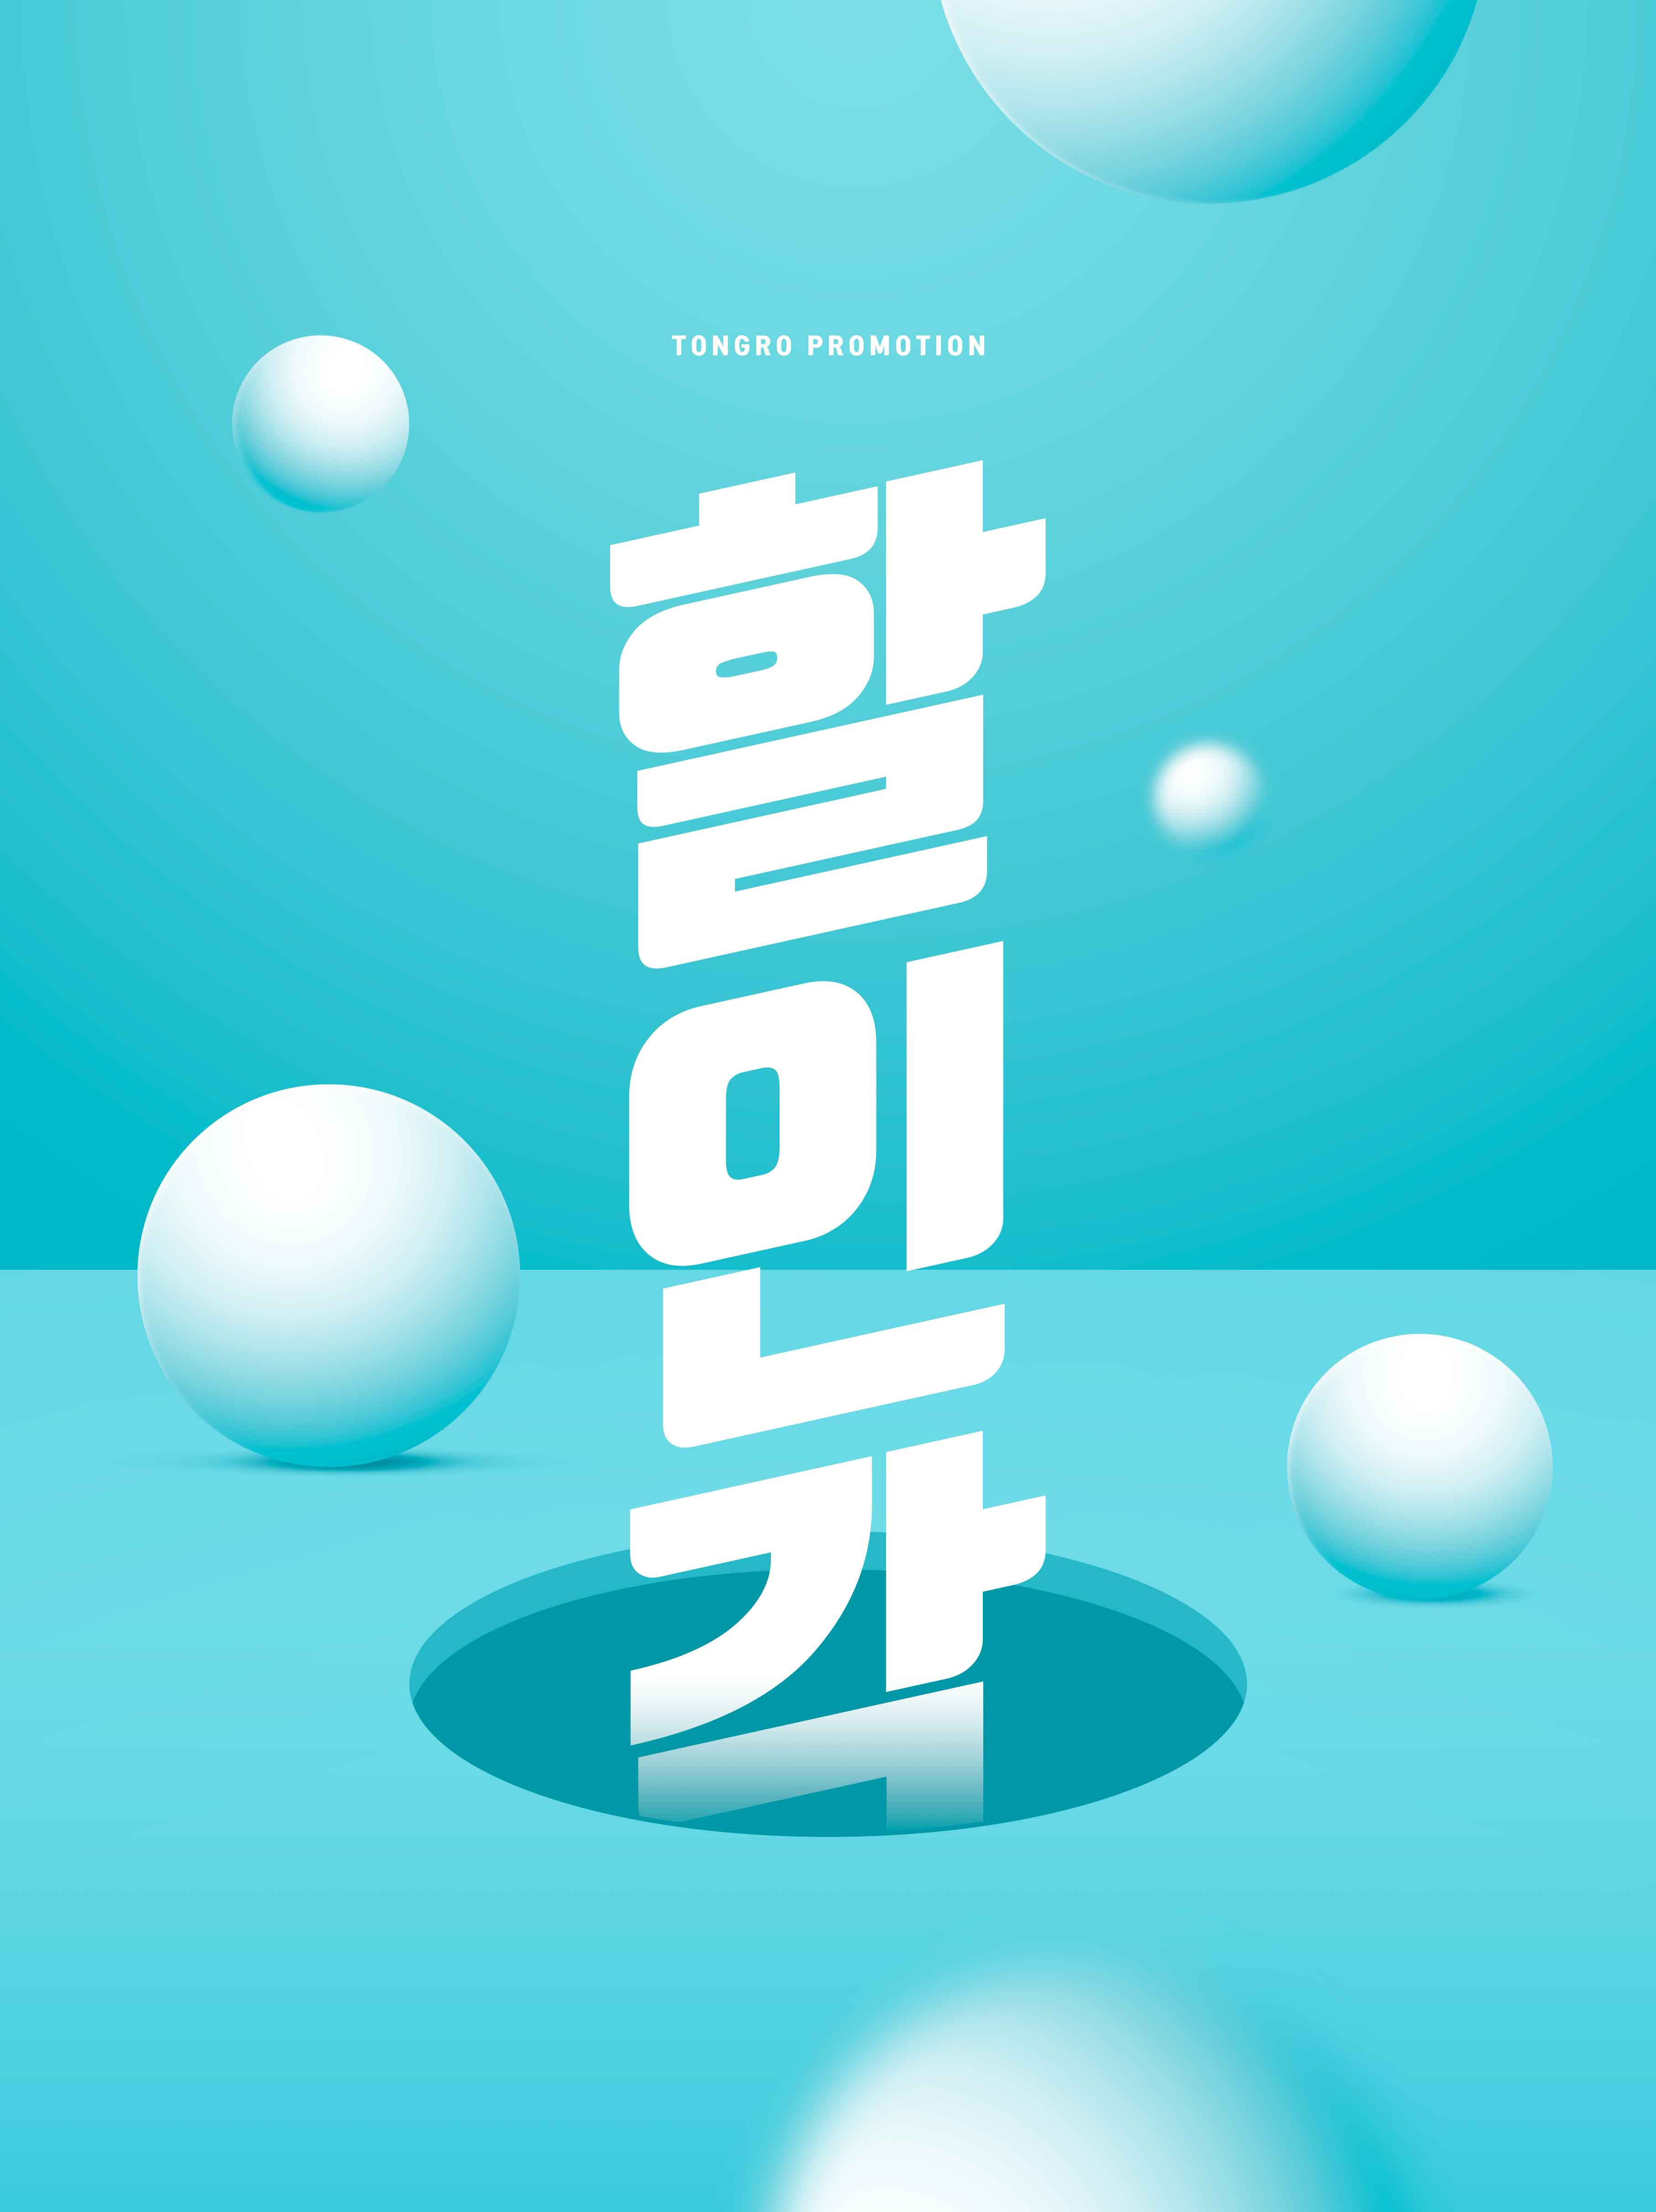 创意几何元素促销海报PSD素材素材中国精选韩国素材合集插图